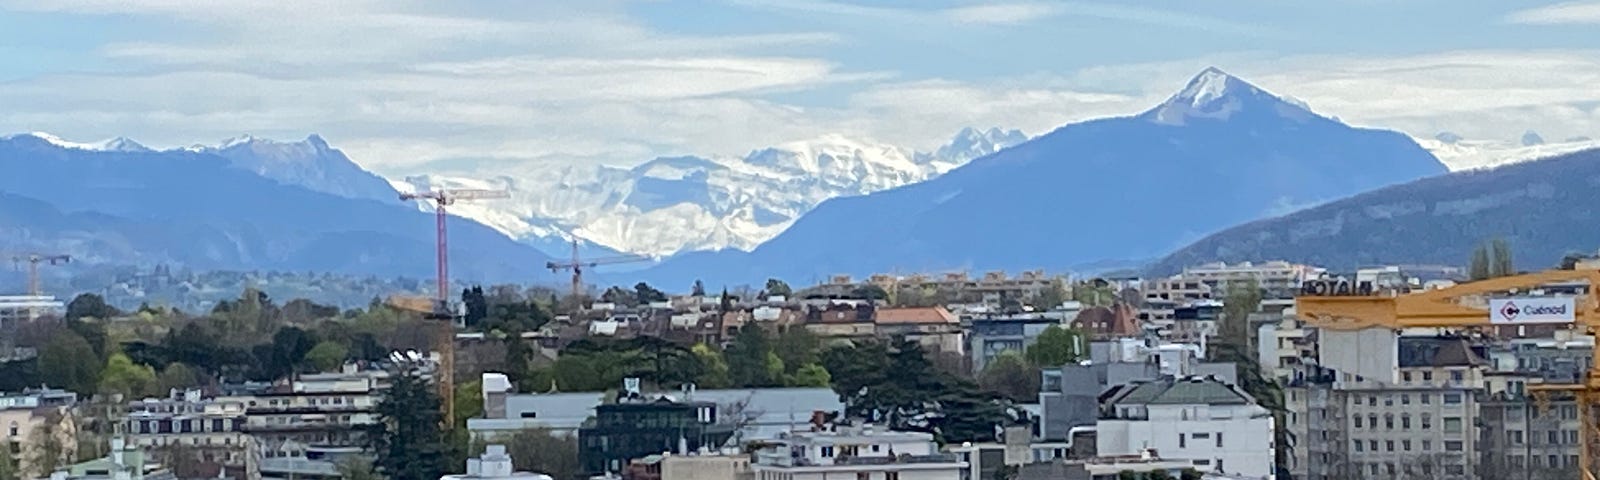 Geneva skyline